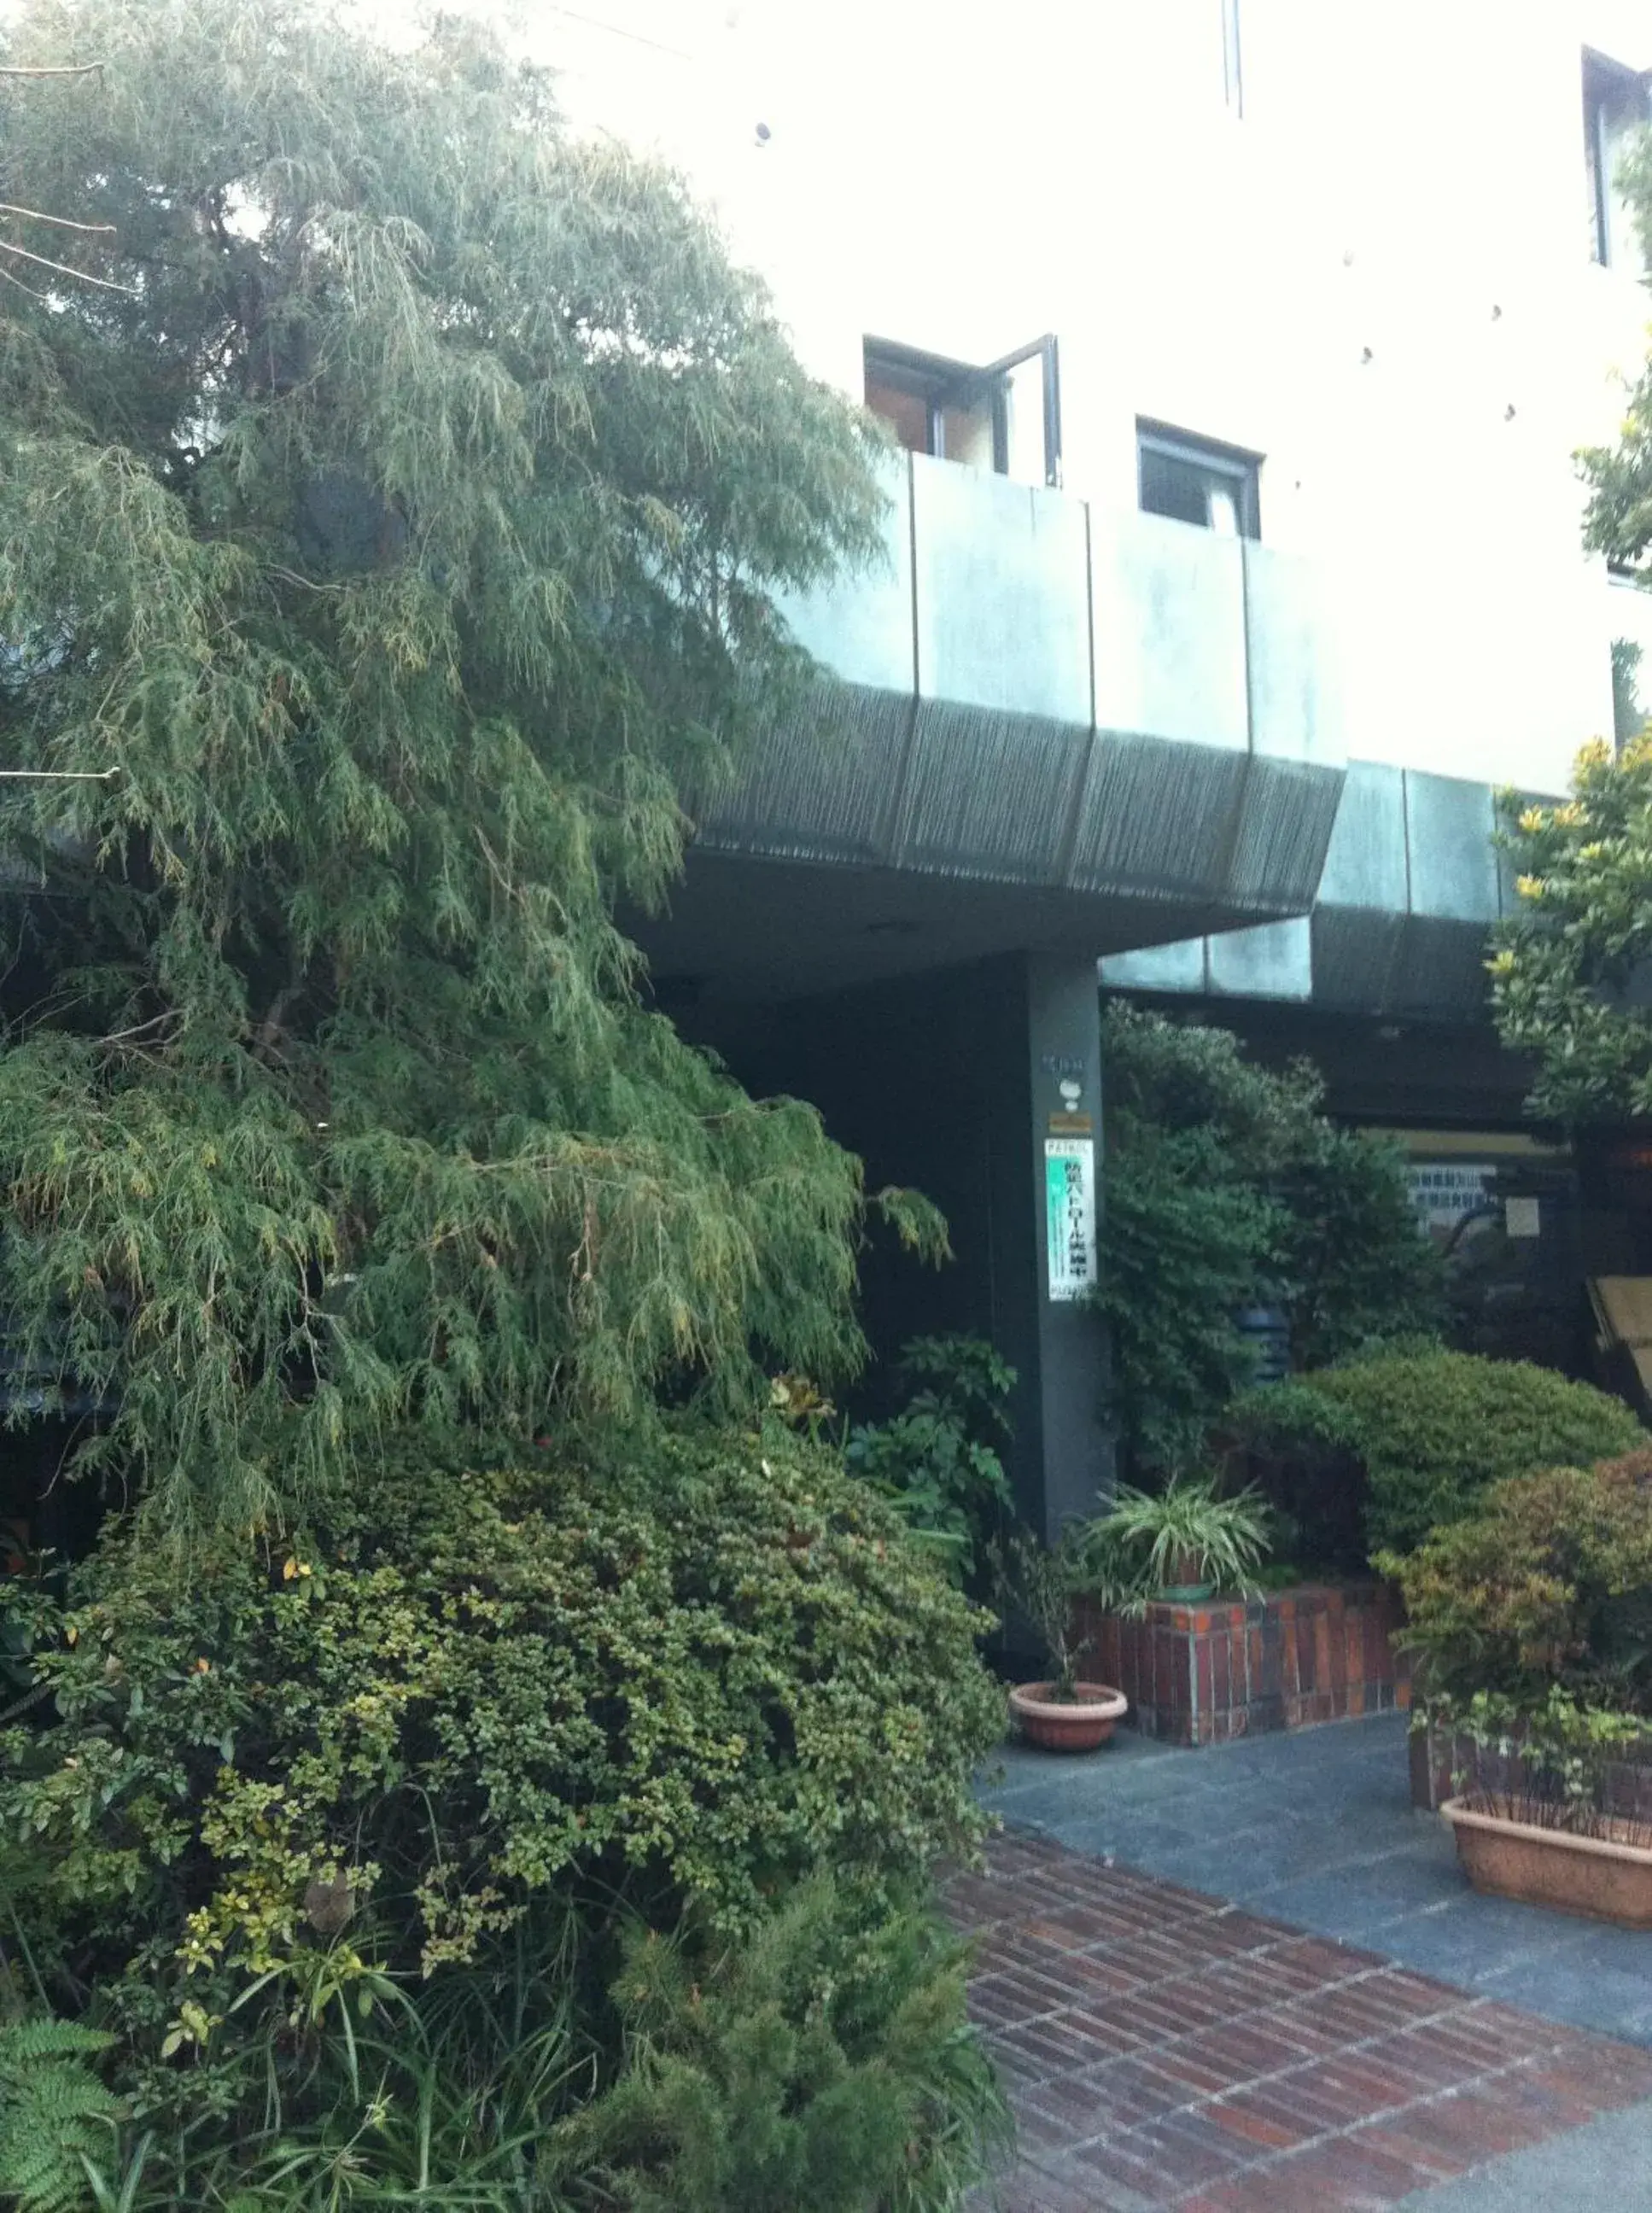 Facade/entrance, Property Building in Hotel Empire in Shinjuku